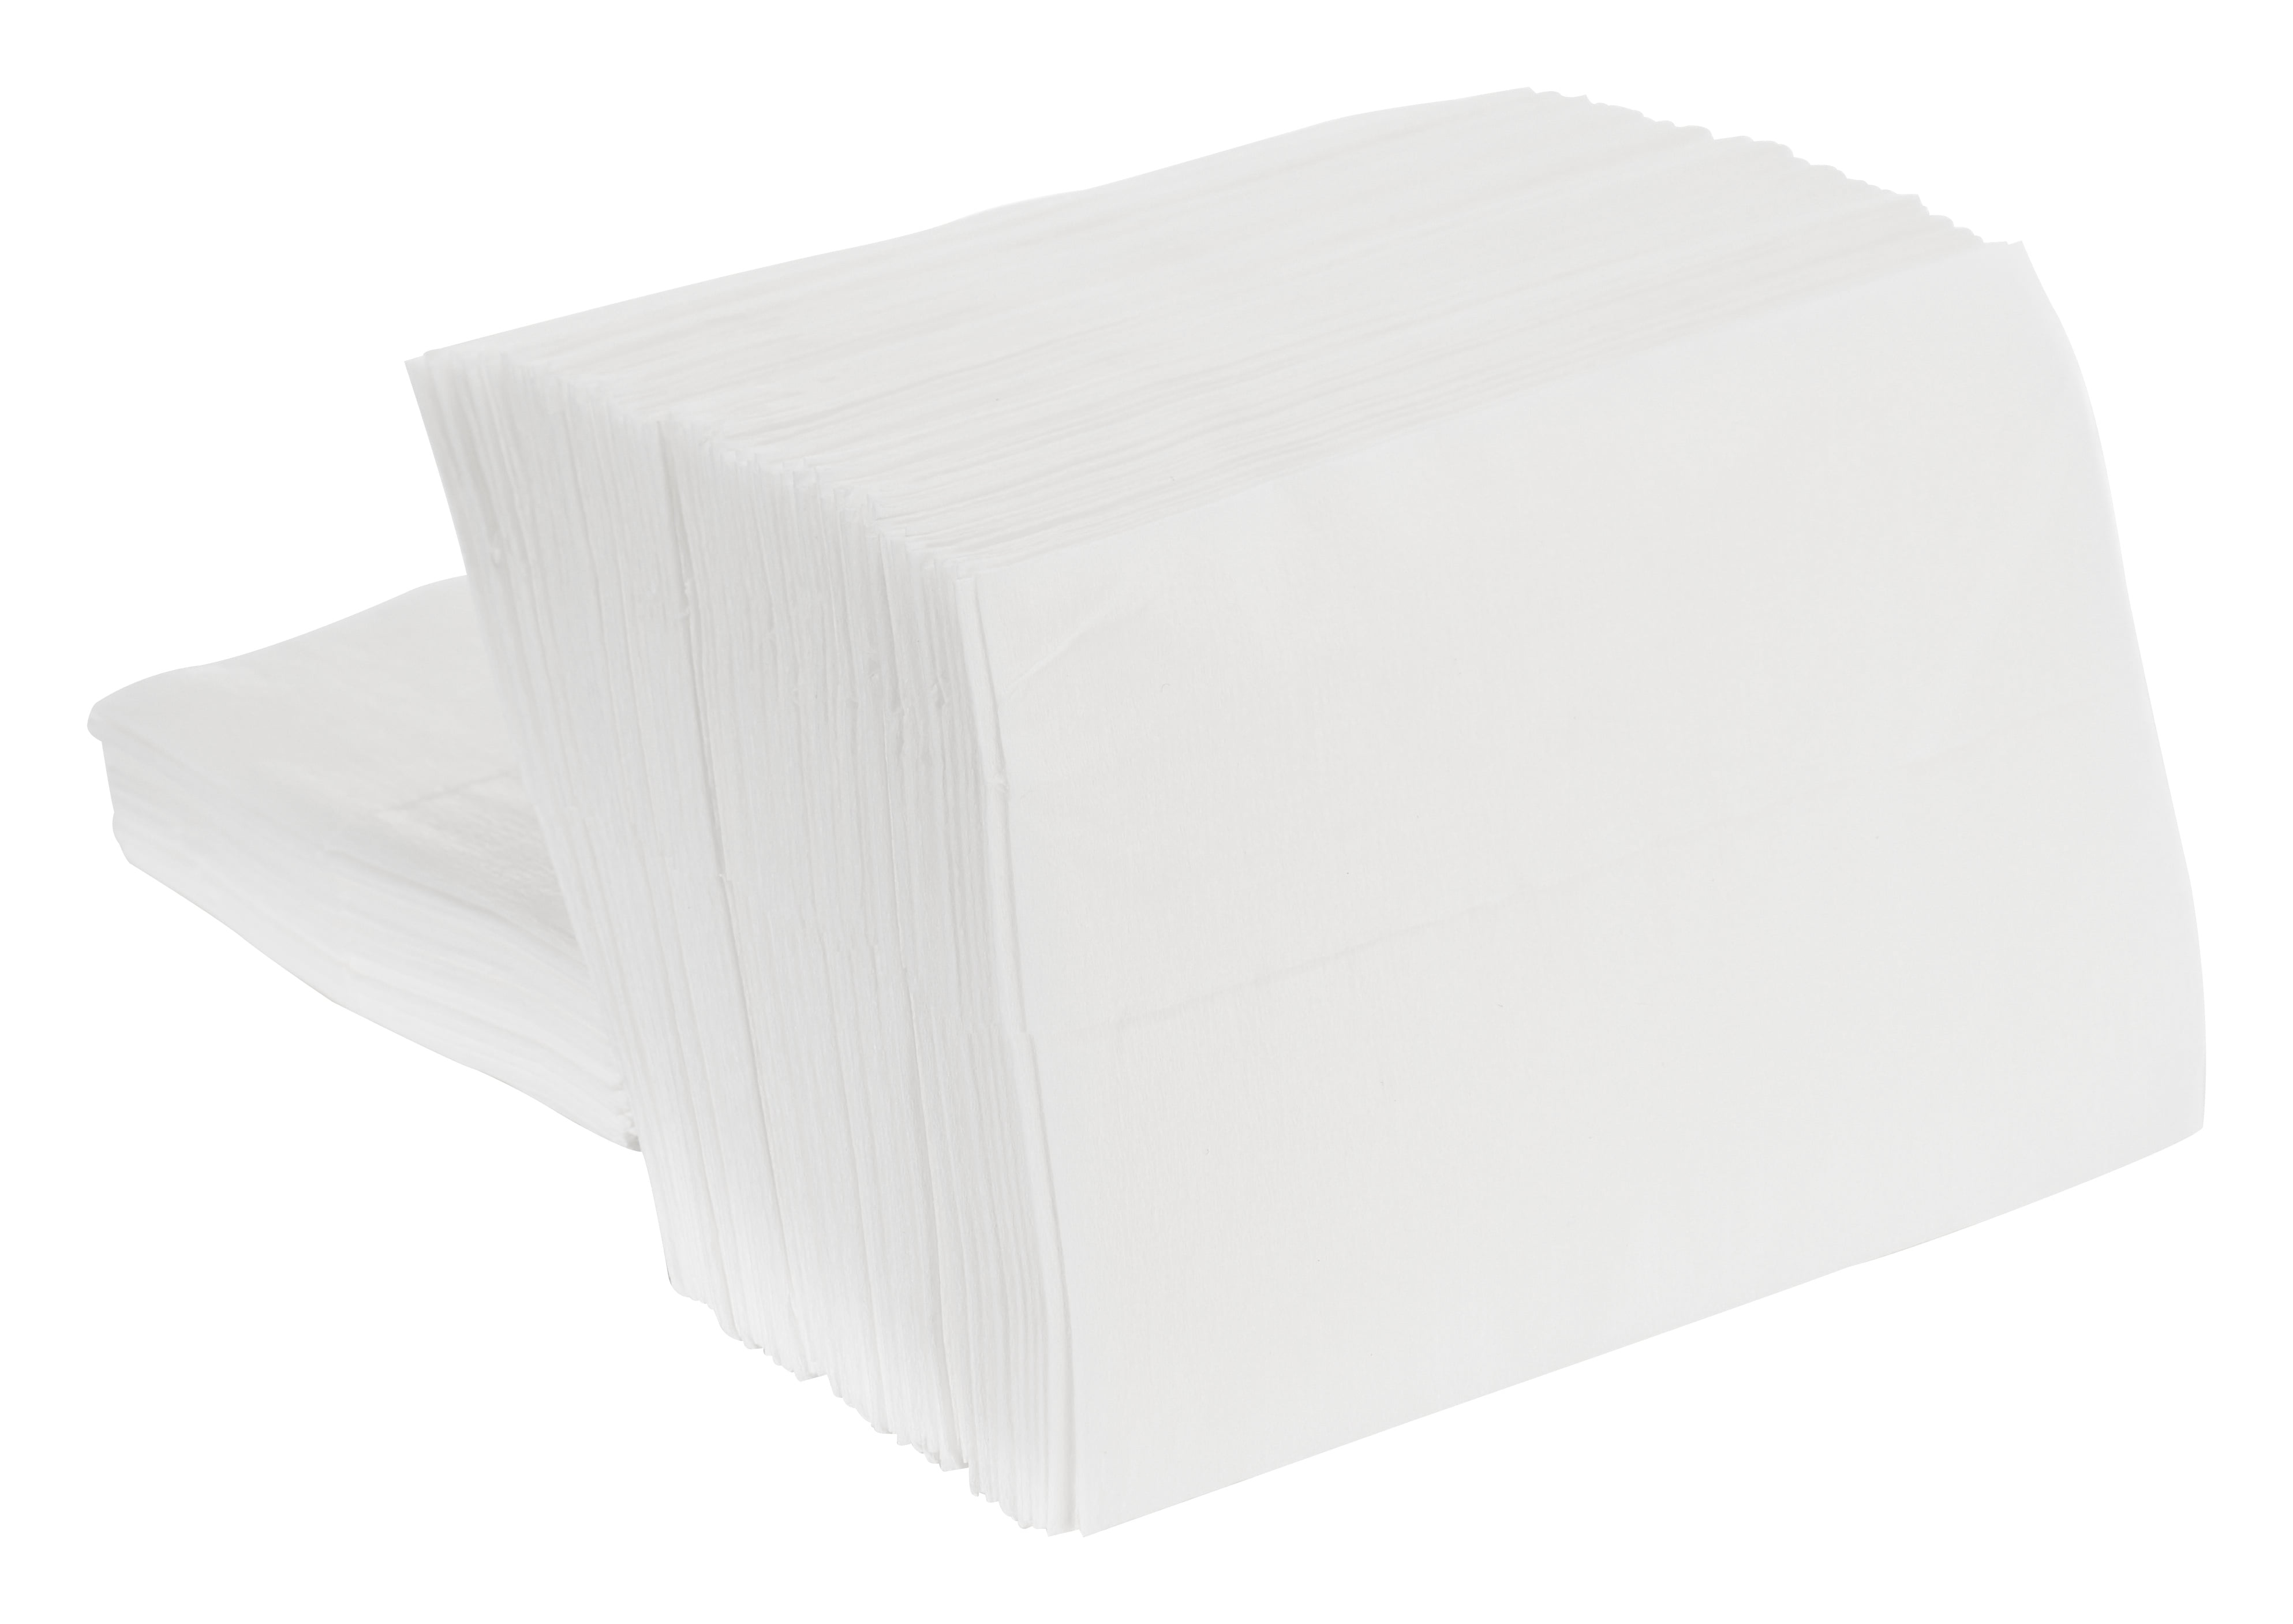 2PLY WHITE 33CM COCKTAIL NAPKINS SERVIETTES SOFT PAPER TISSUE x 500 